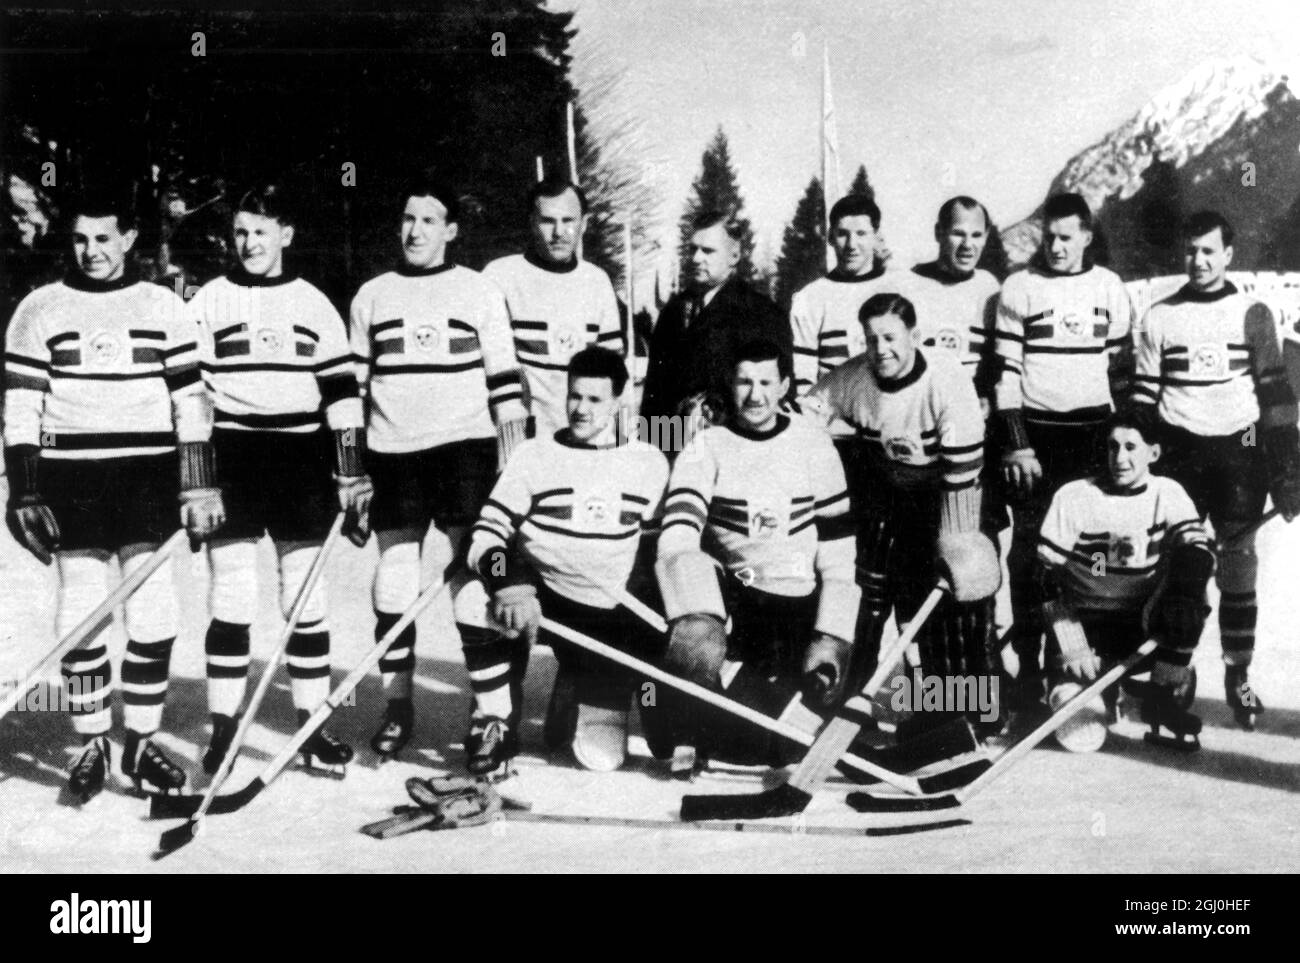 Olympische Winterspiele 1936 - Garmisch und Partenkirchen in Bayern, Deutschland. Die britische Eishockey-Mannschaft, die Kanada besiegte, um die Goldmedaille zu gewinnen - ©TopFoto Stockfoto